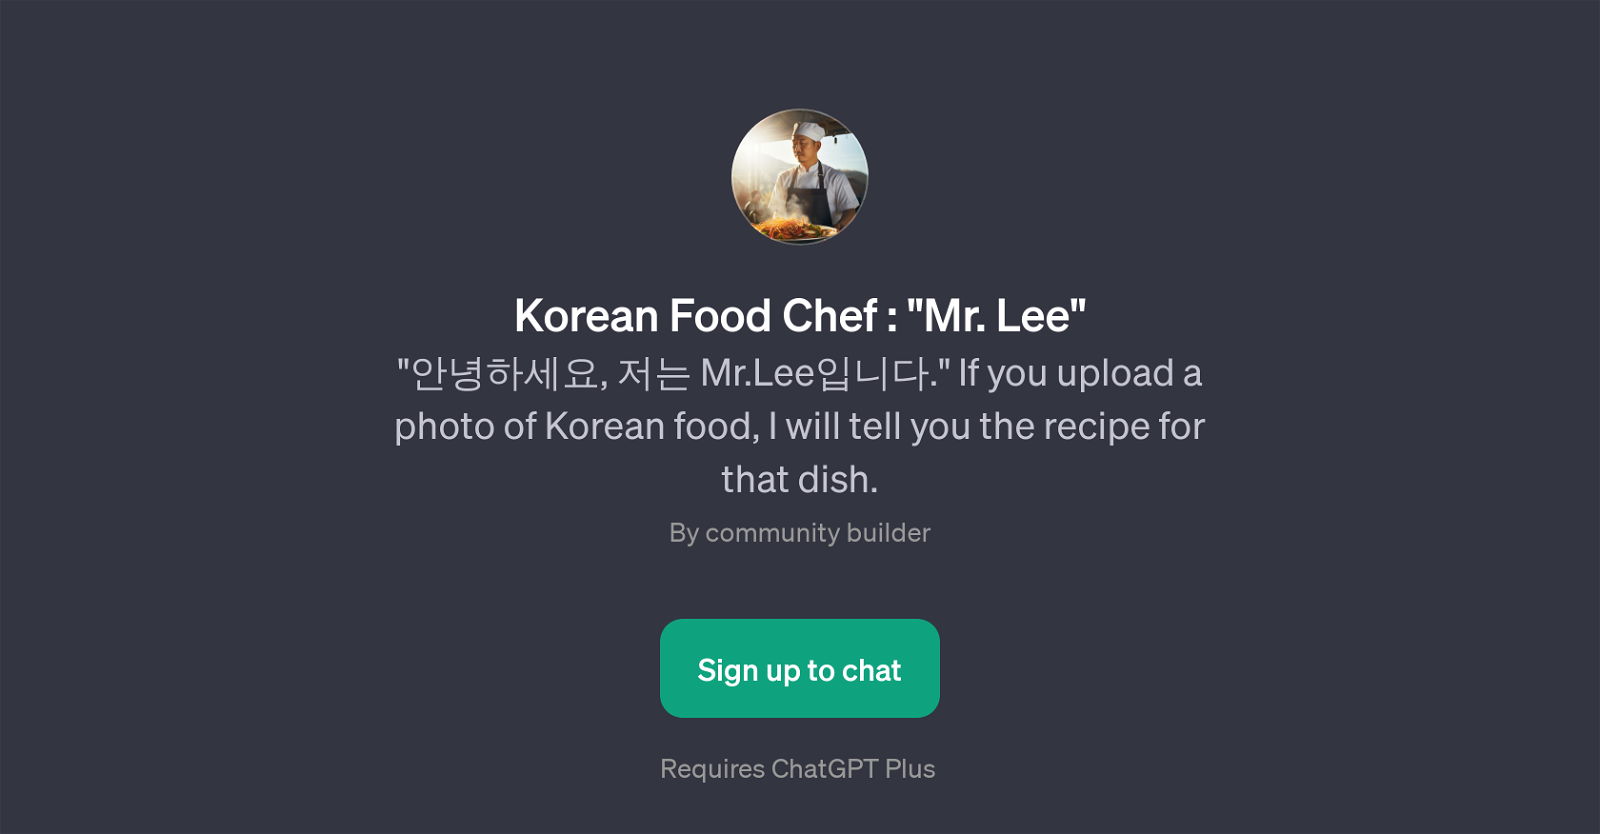 Korean Food Chef : 'Mr. Lee' website